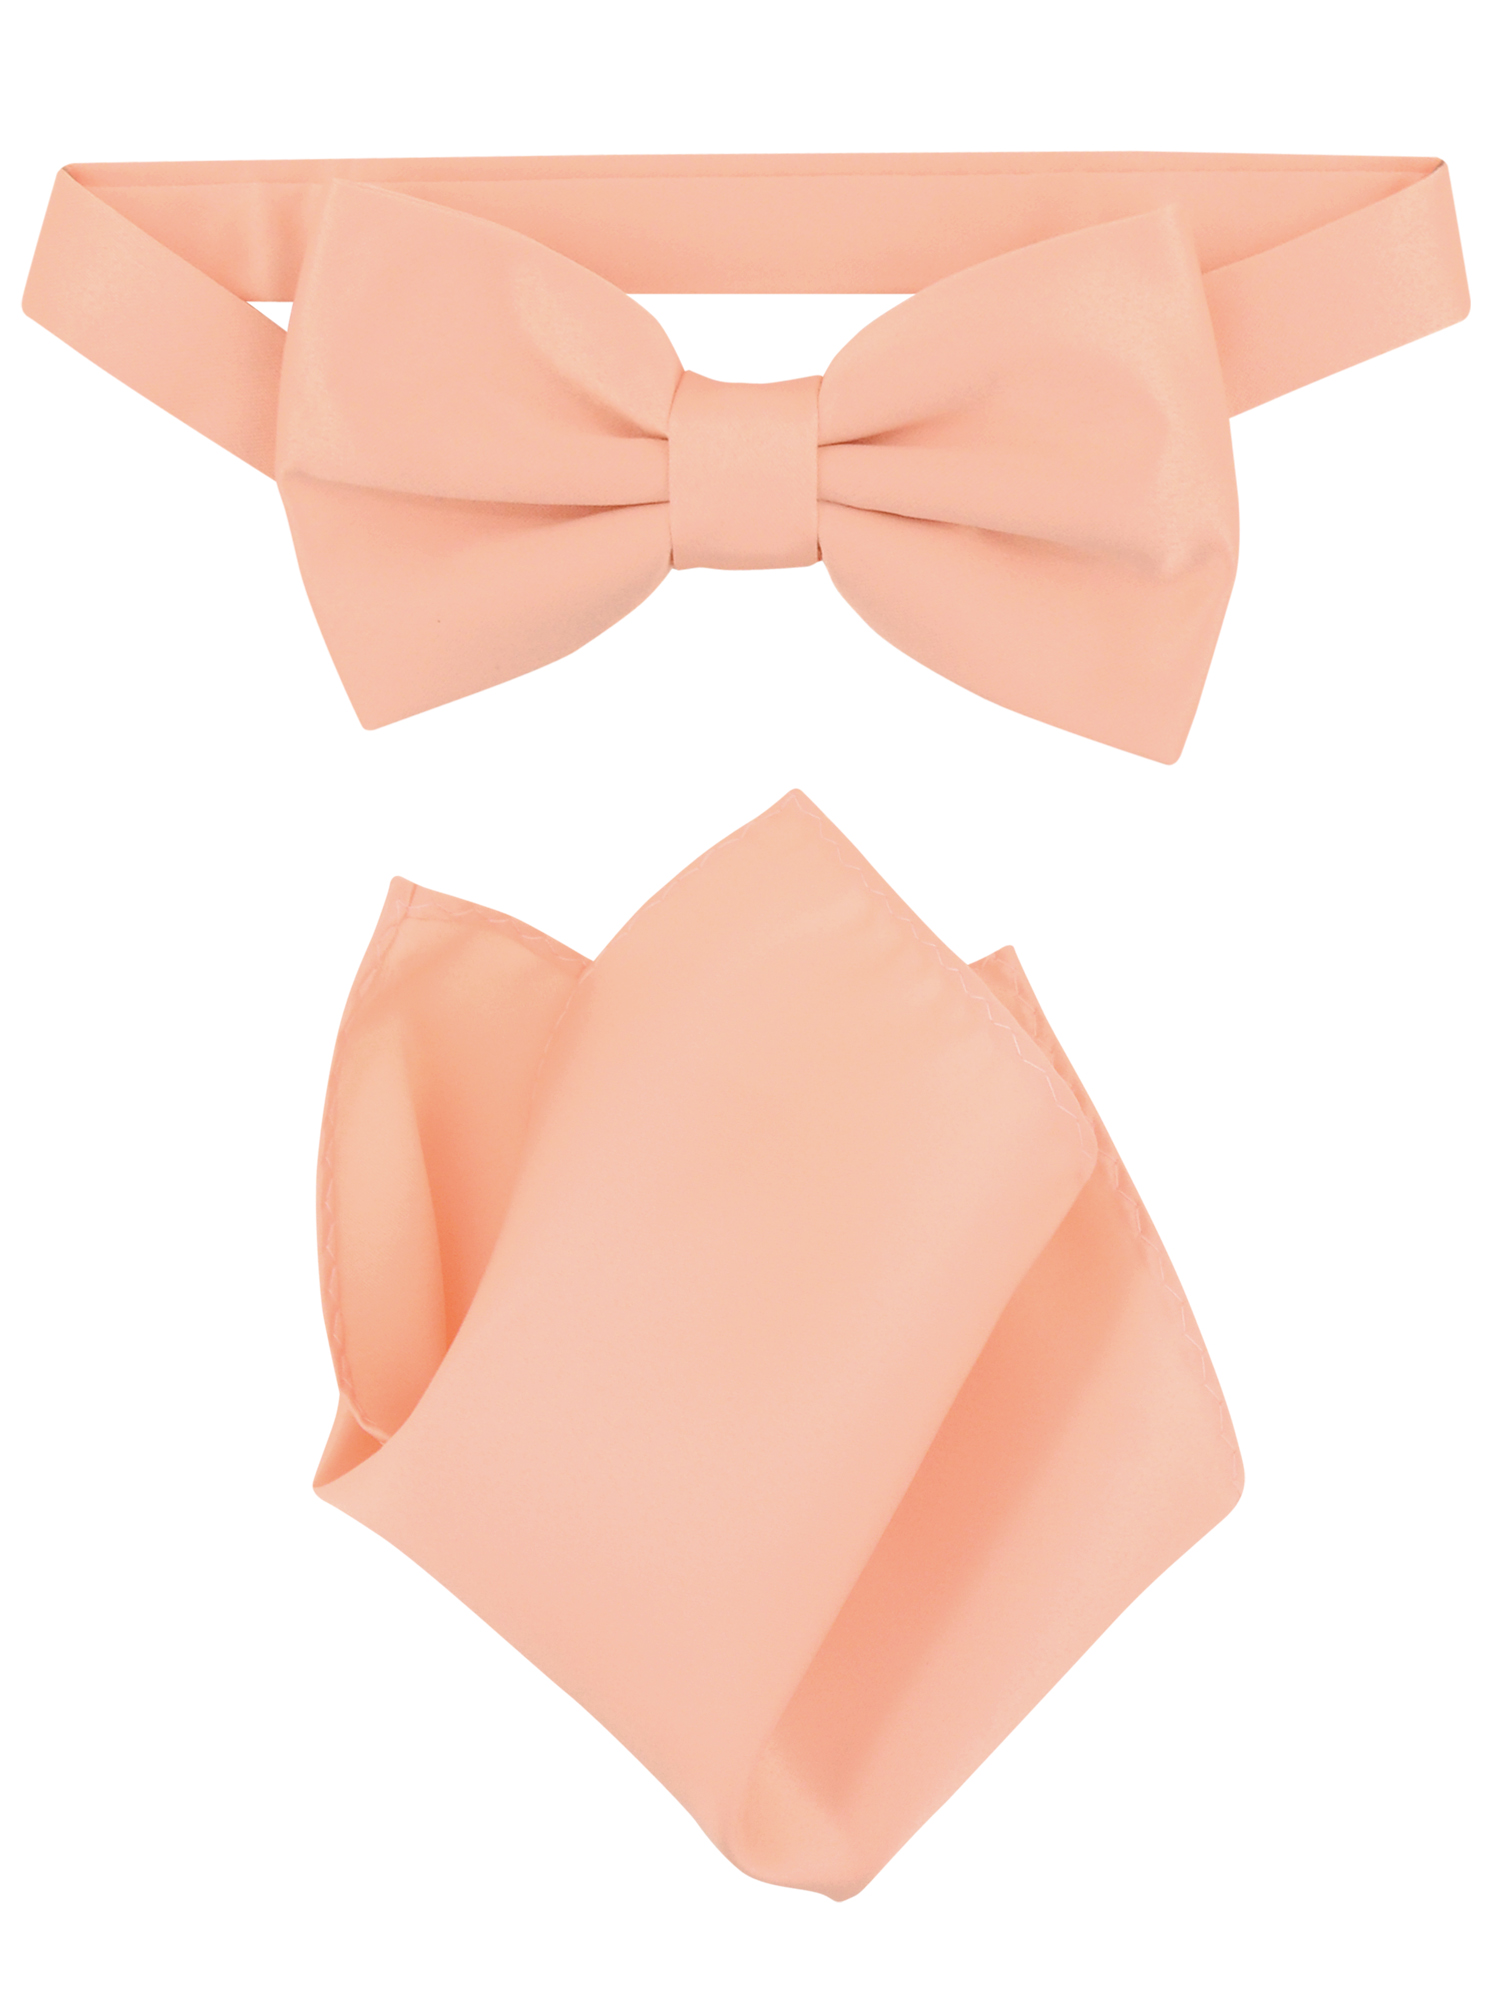 Vesuvio Napoli BowTie Solid Peach Color Mens Bow Tie & Handkerchief - image 1 of 1